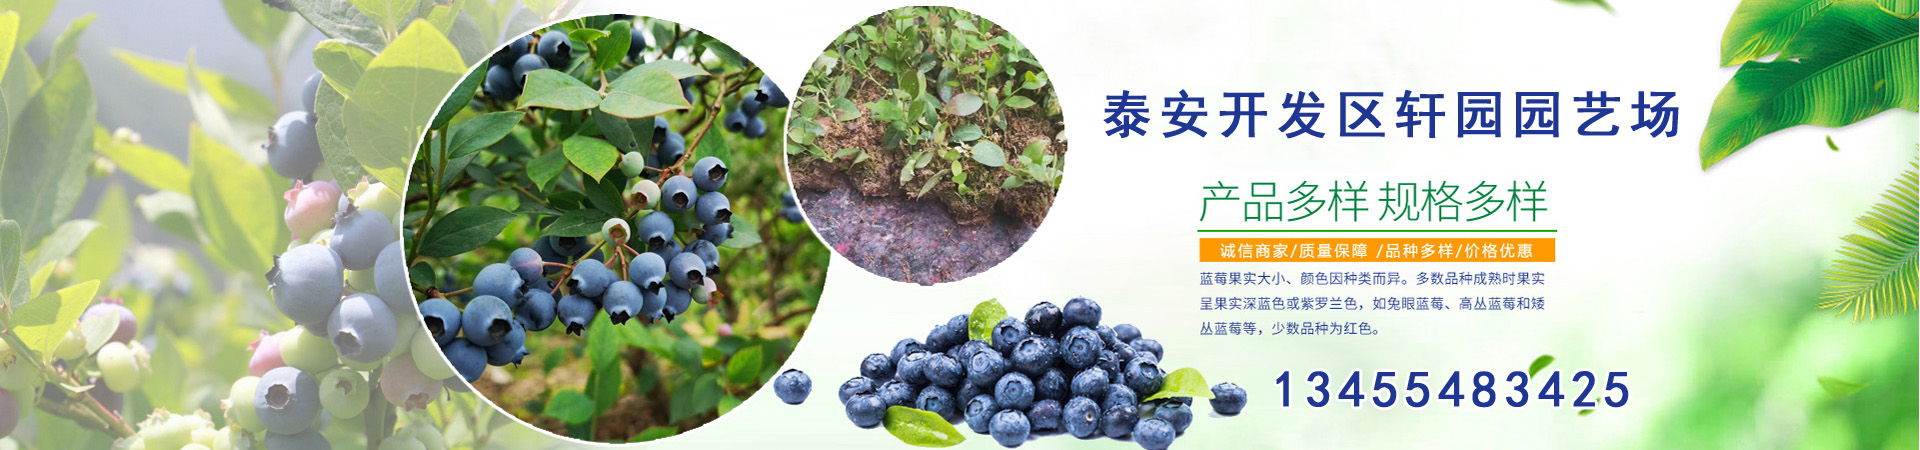 蓝莓苗、云南本地蓝莓苗、云南、云南蓝莓苗